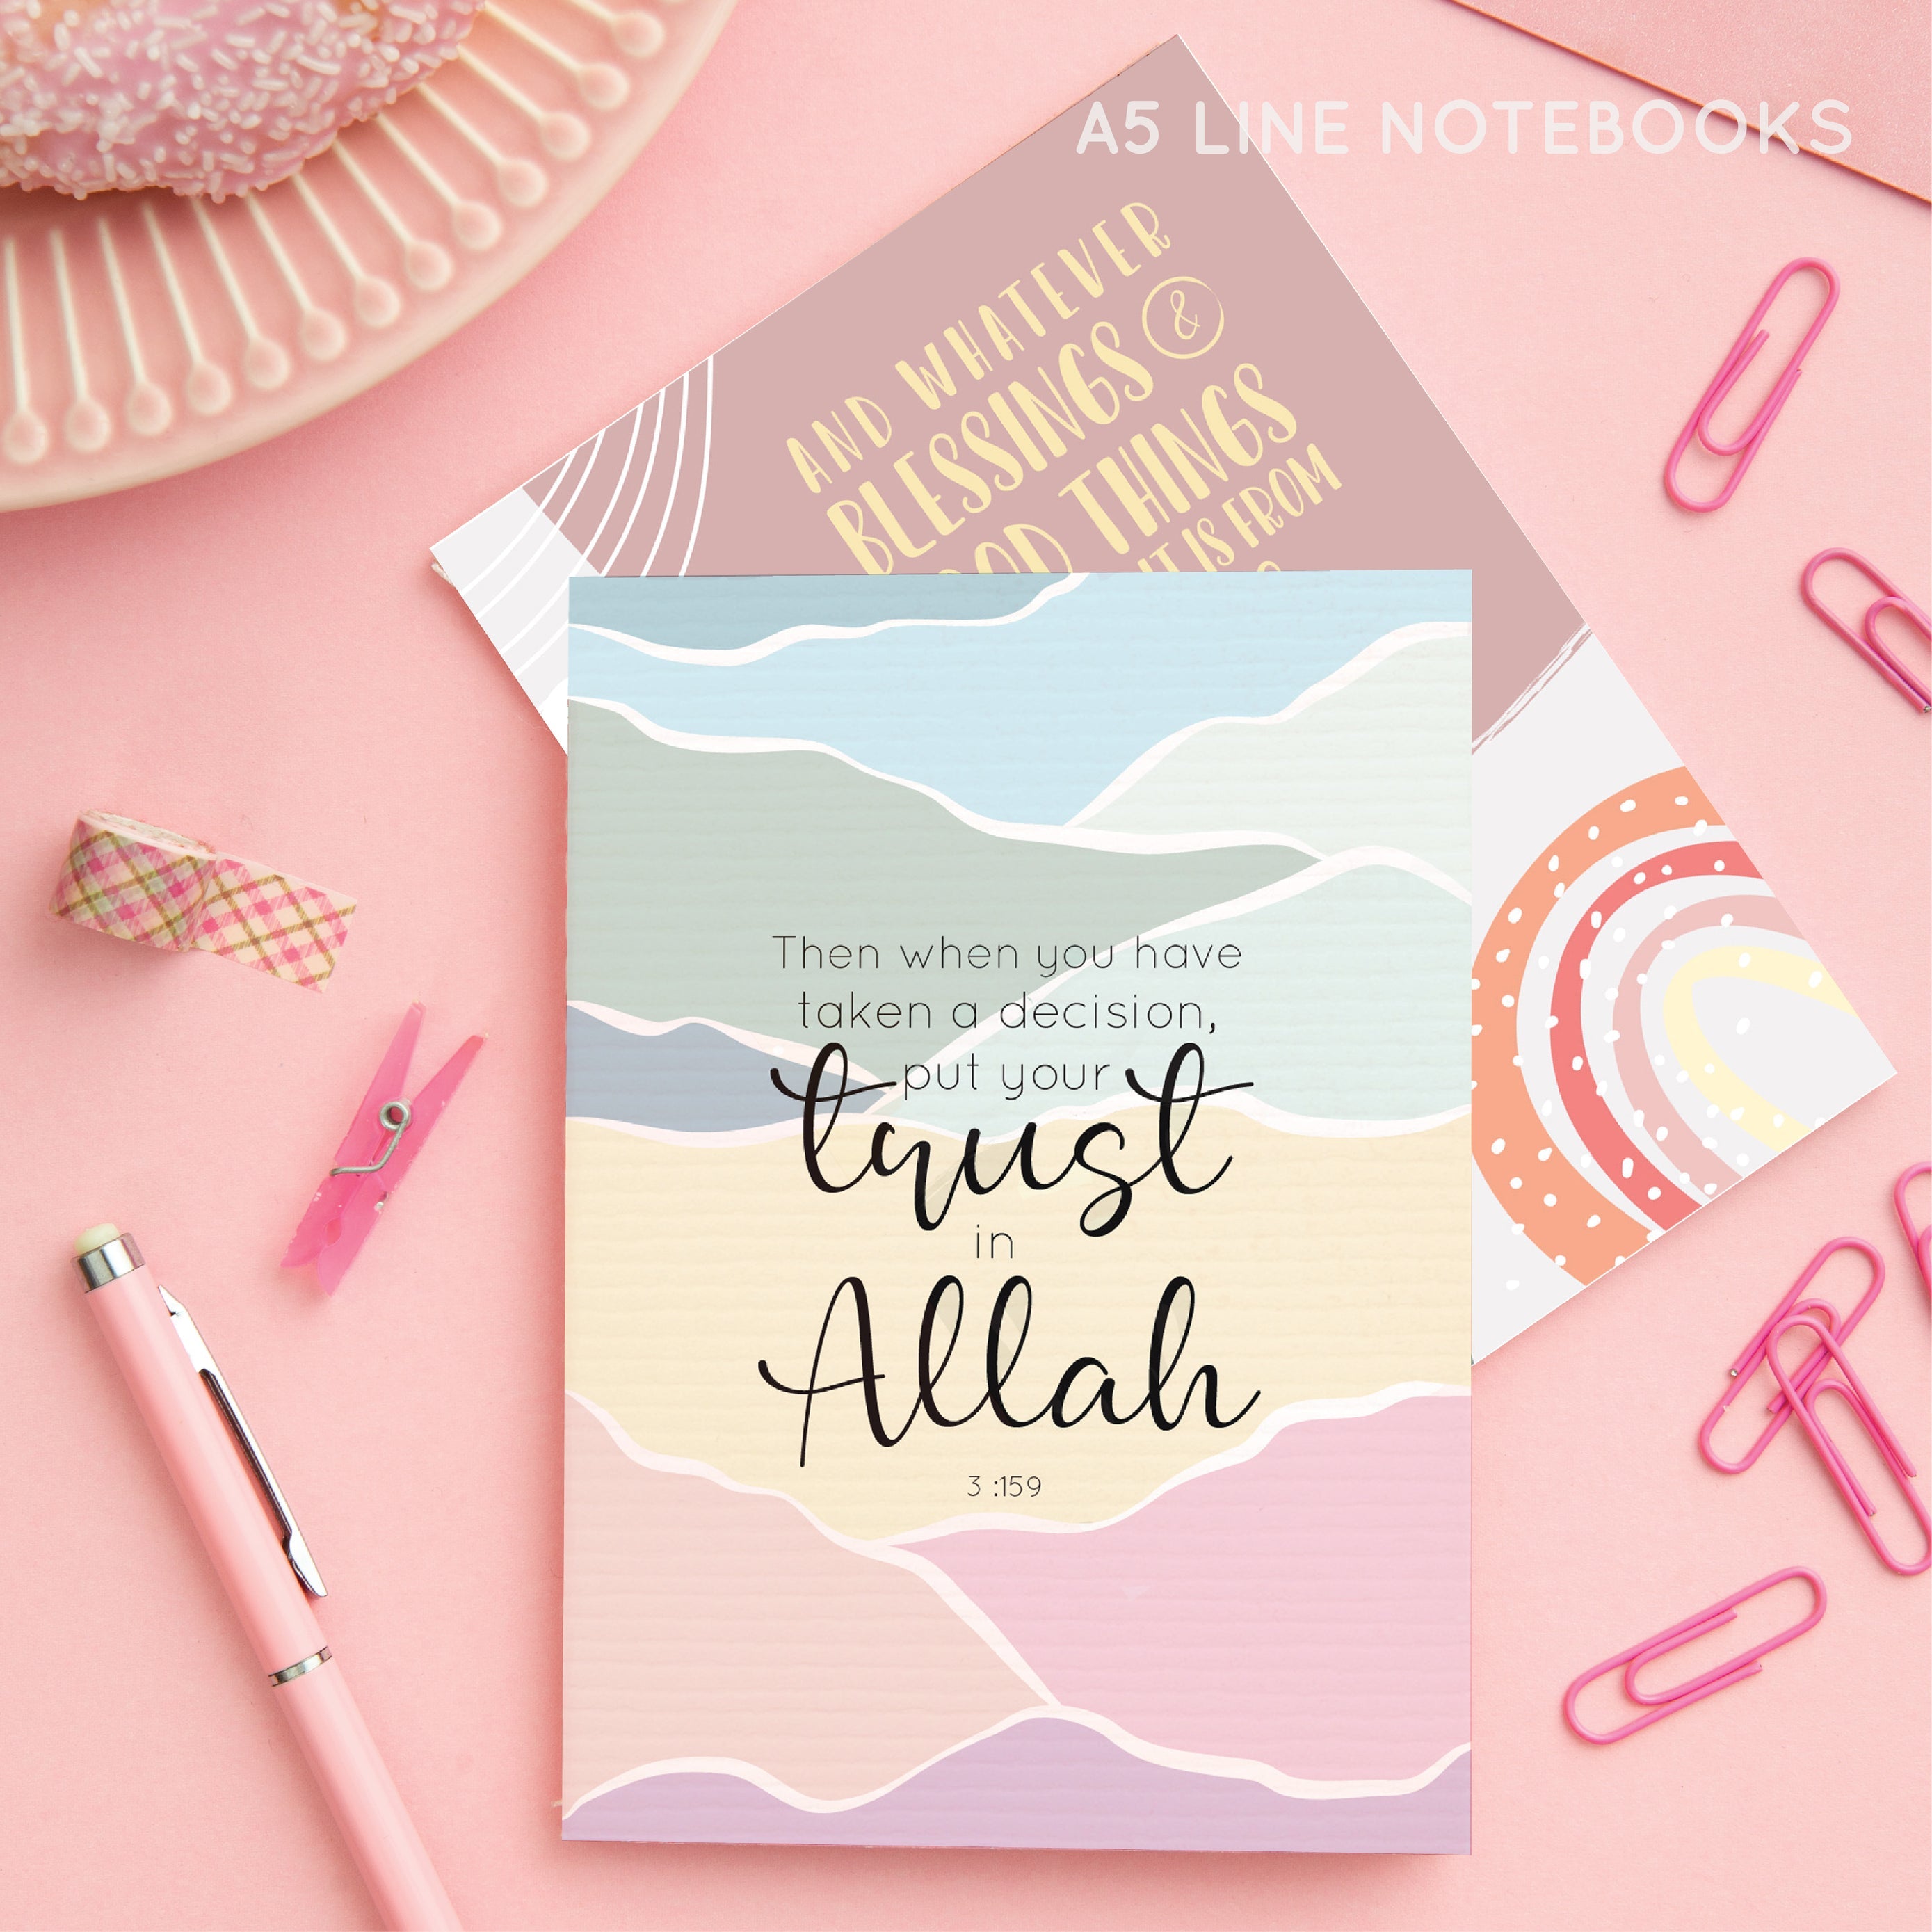 Islamic Notebook Grateful